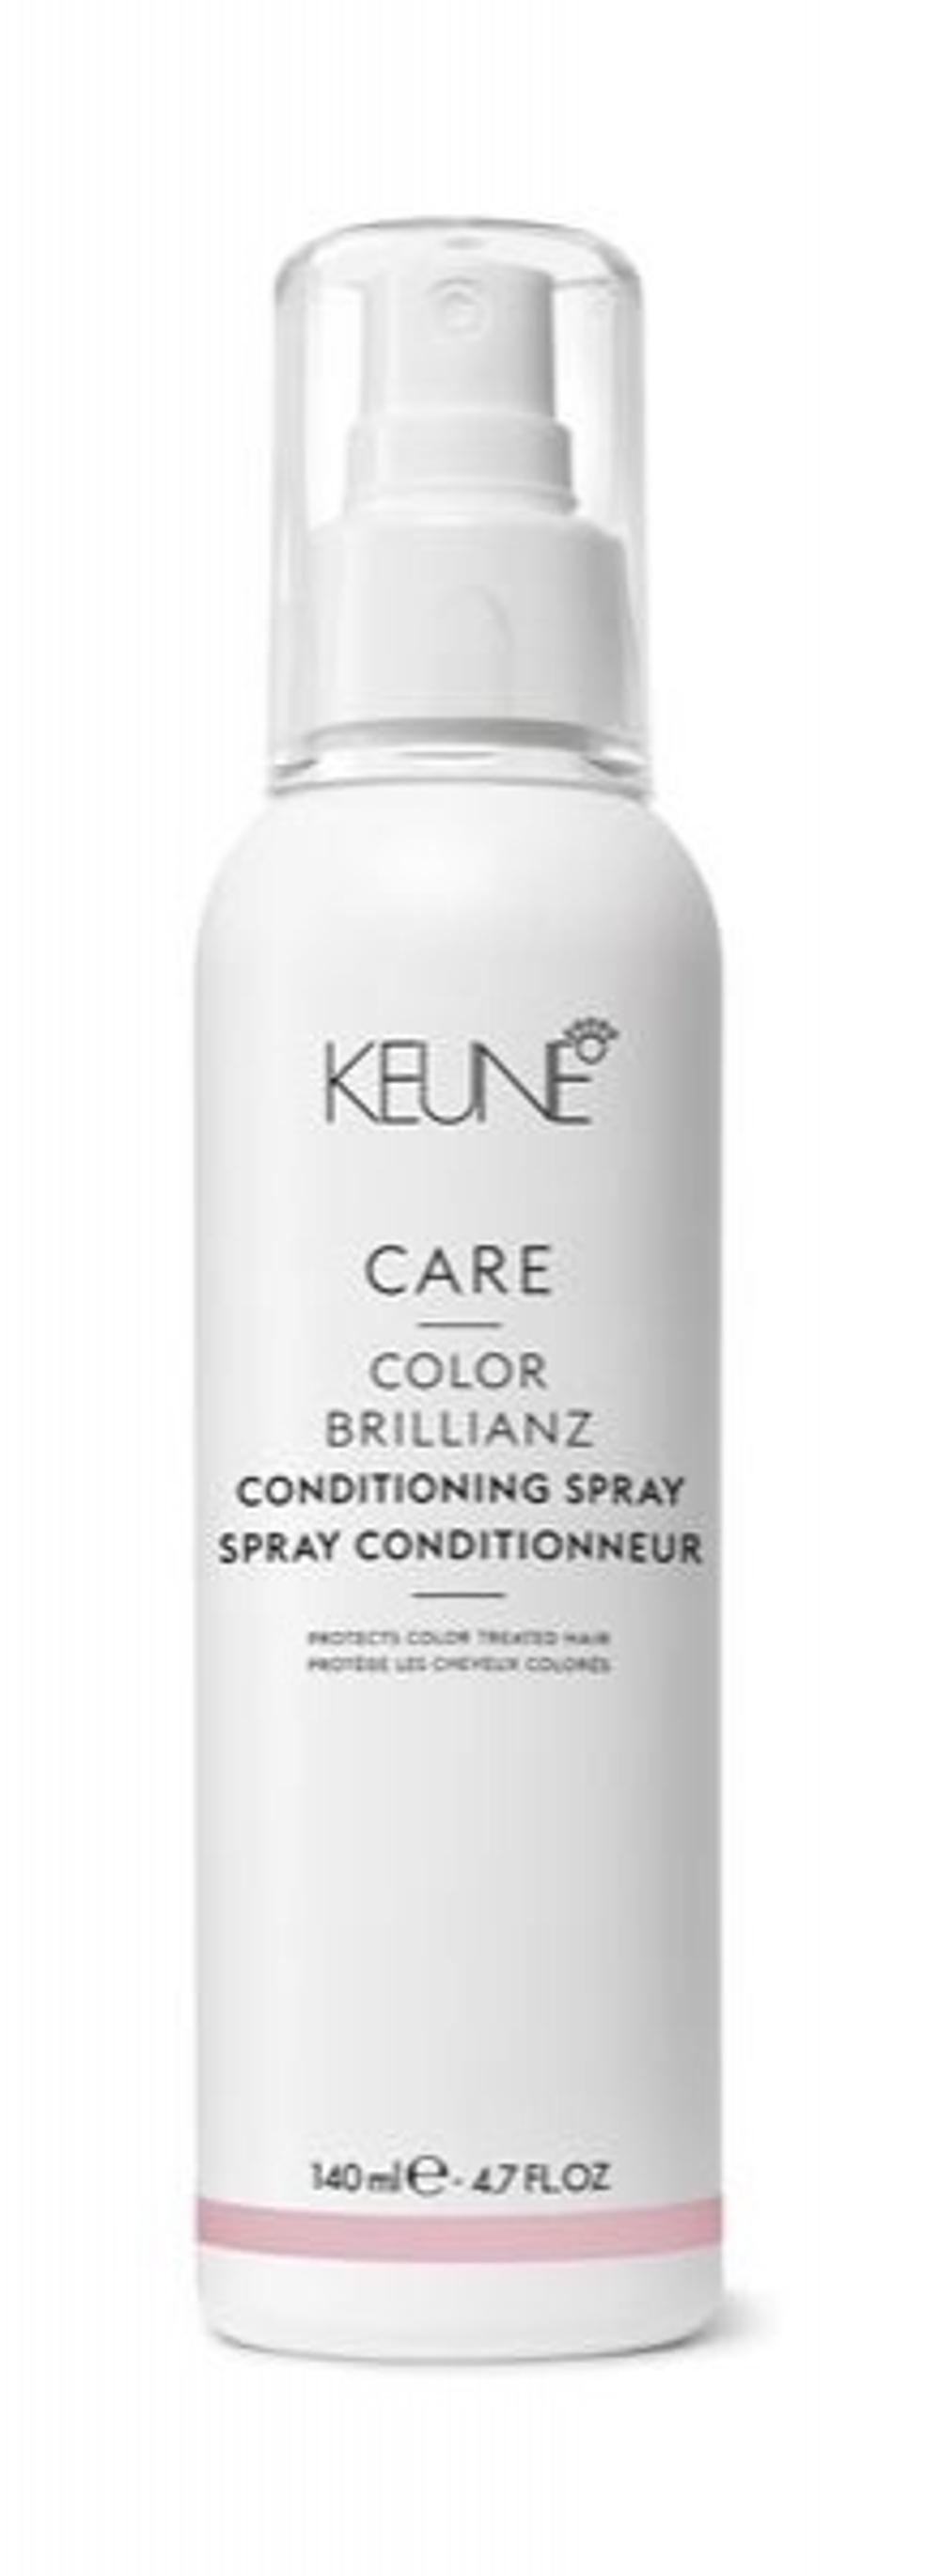 Keune Кондиционер-спрей для волос Яркость цвета Care Color Brillianz 140 мл